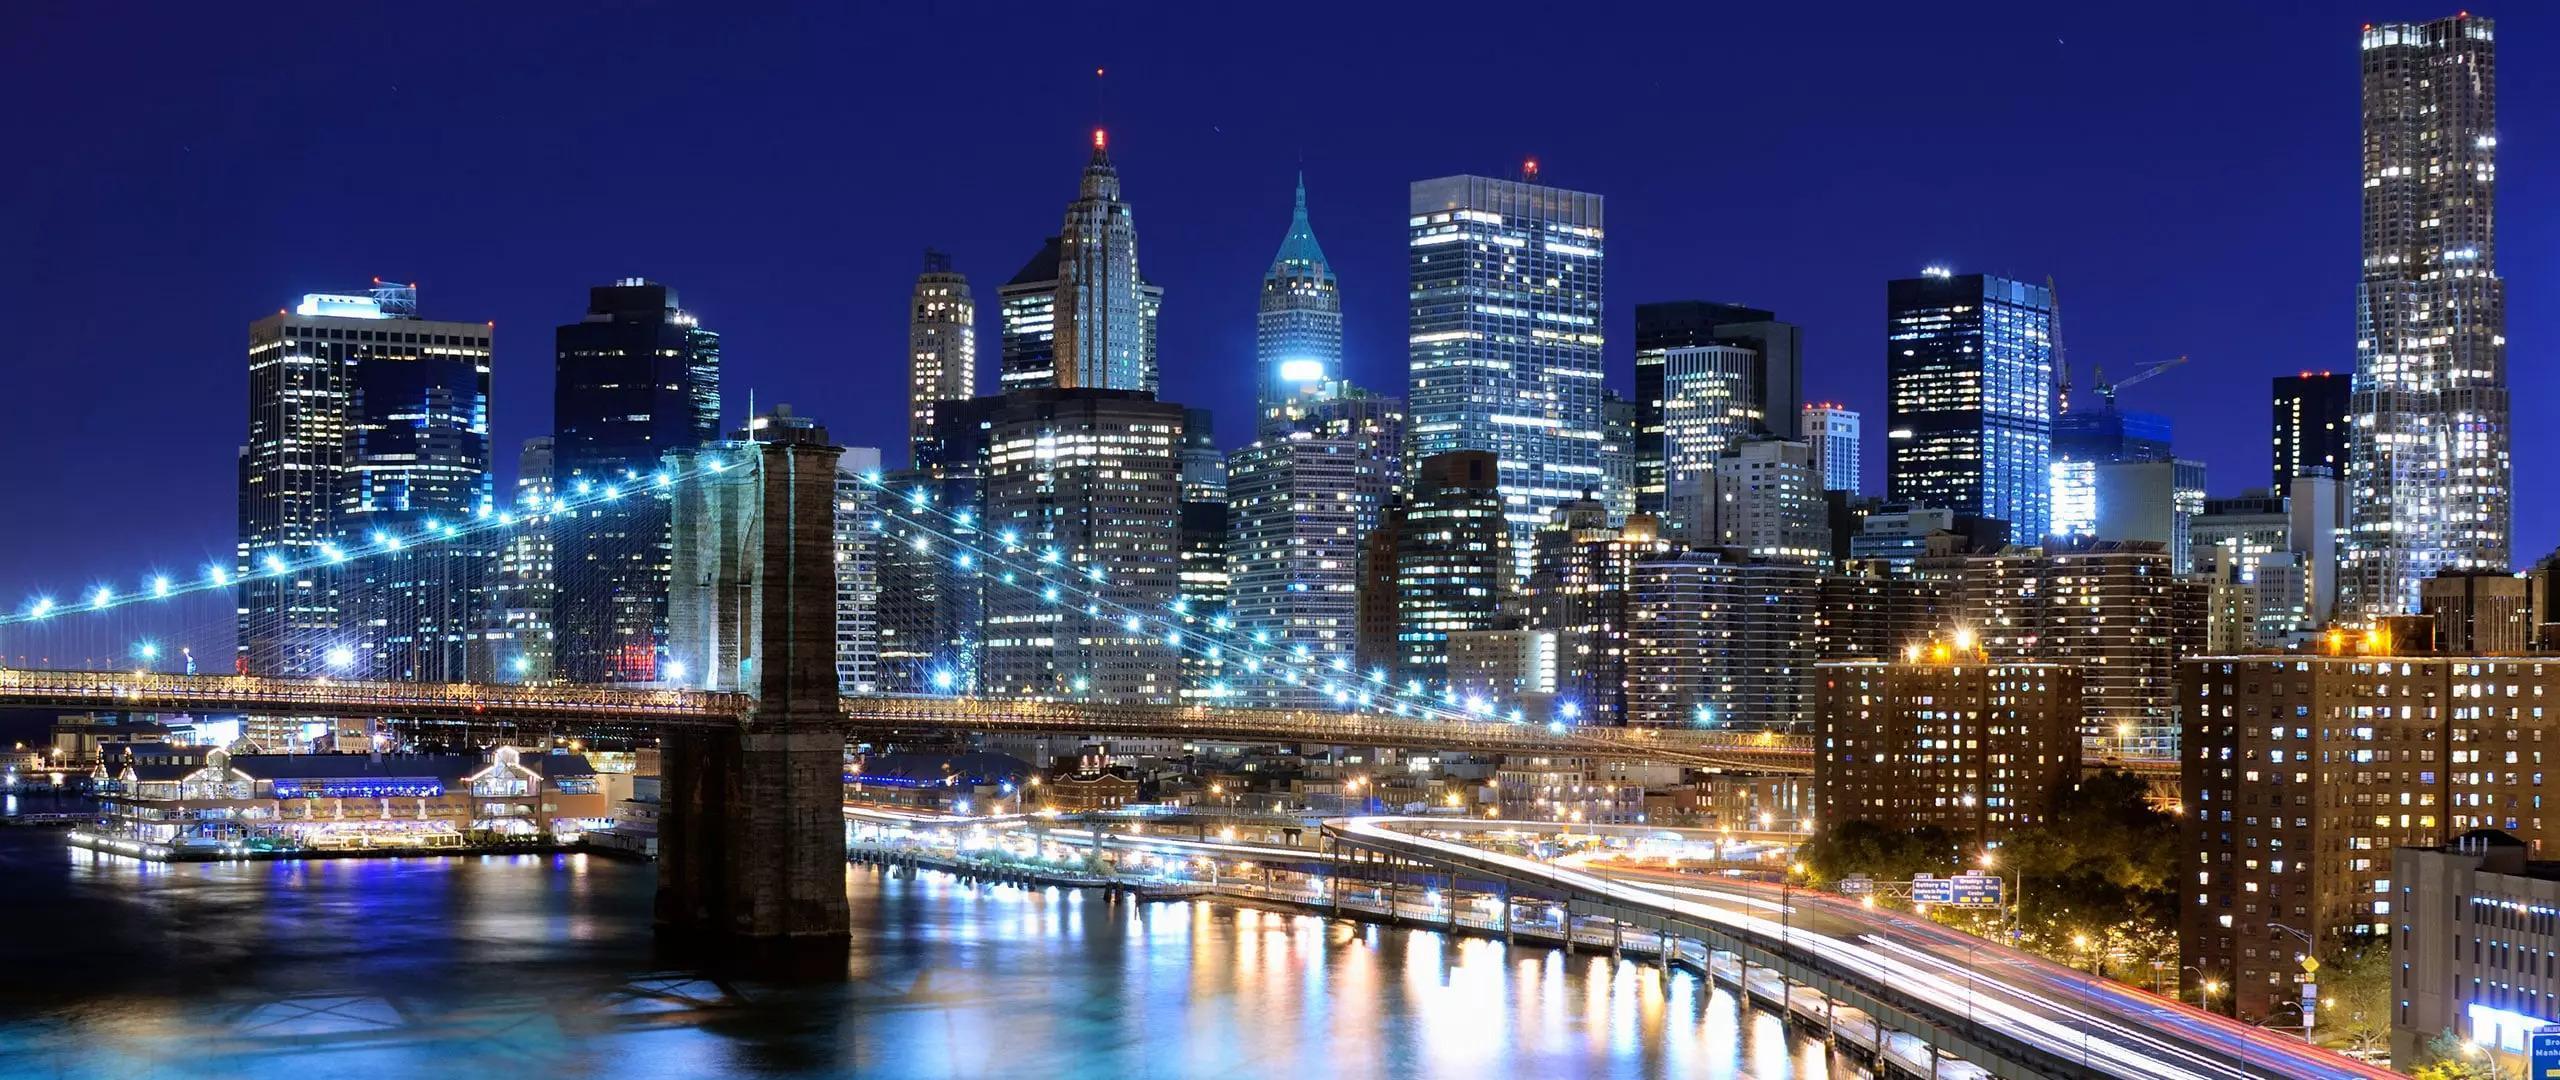 Soluxio Solarlichtmast Strassenlaterne in Smart City New York